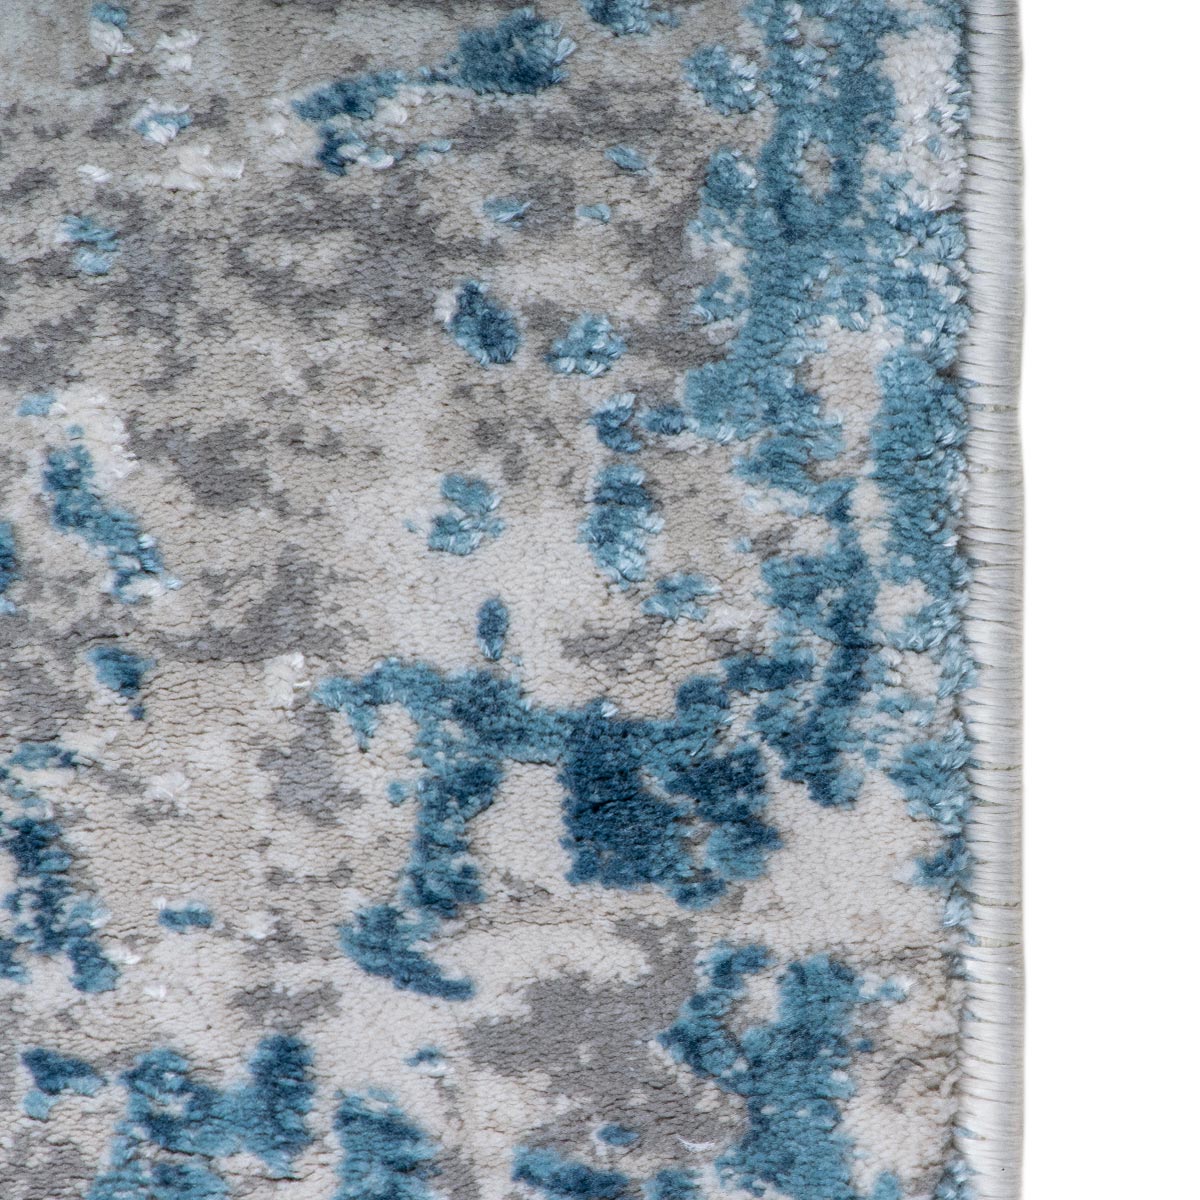 שטיח מילאנו 01 אפור/כחול | השטיח האדום